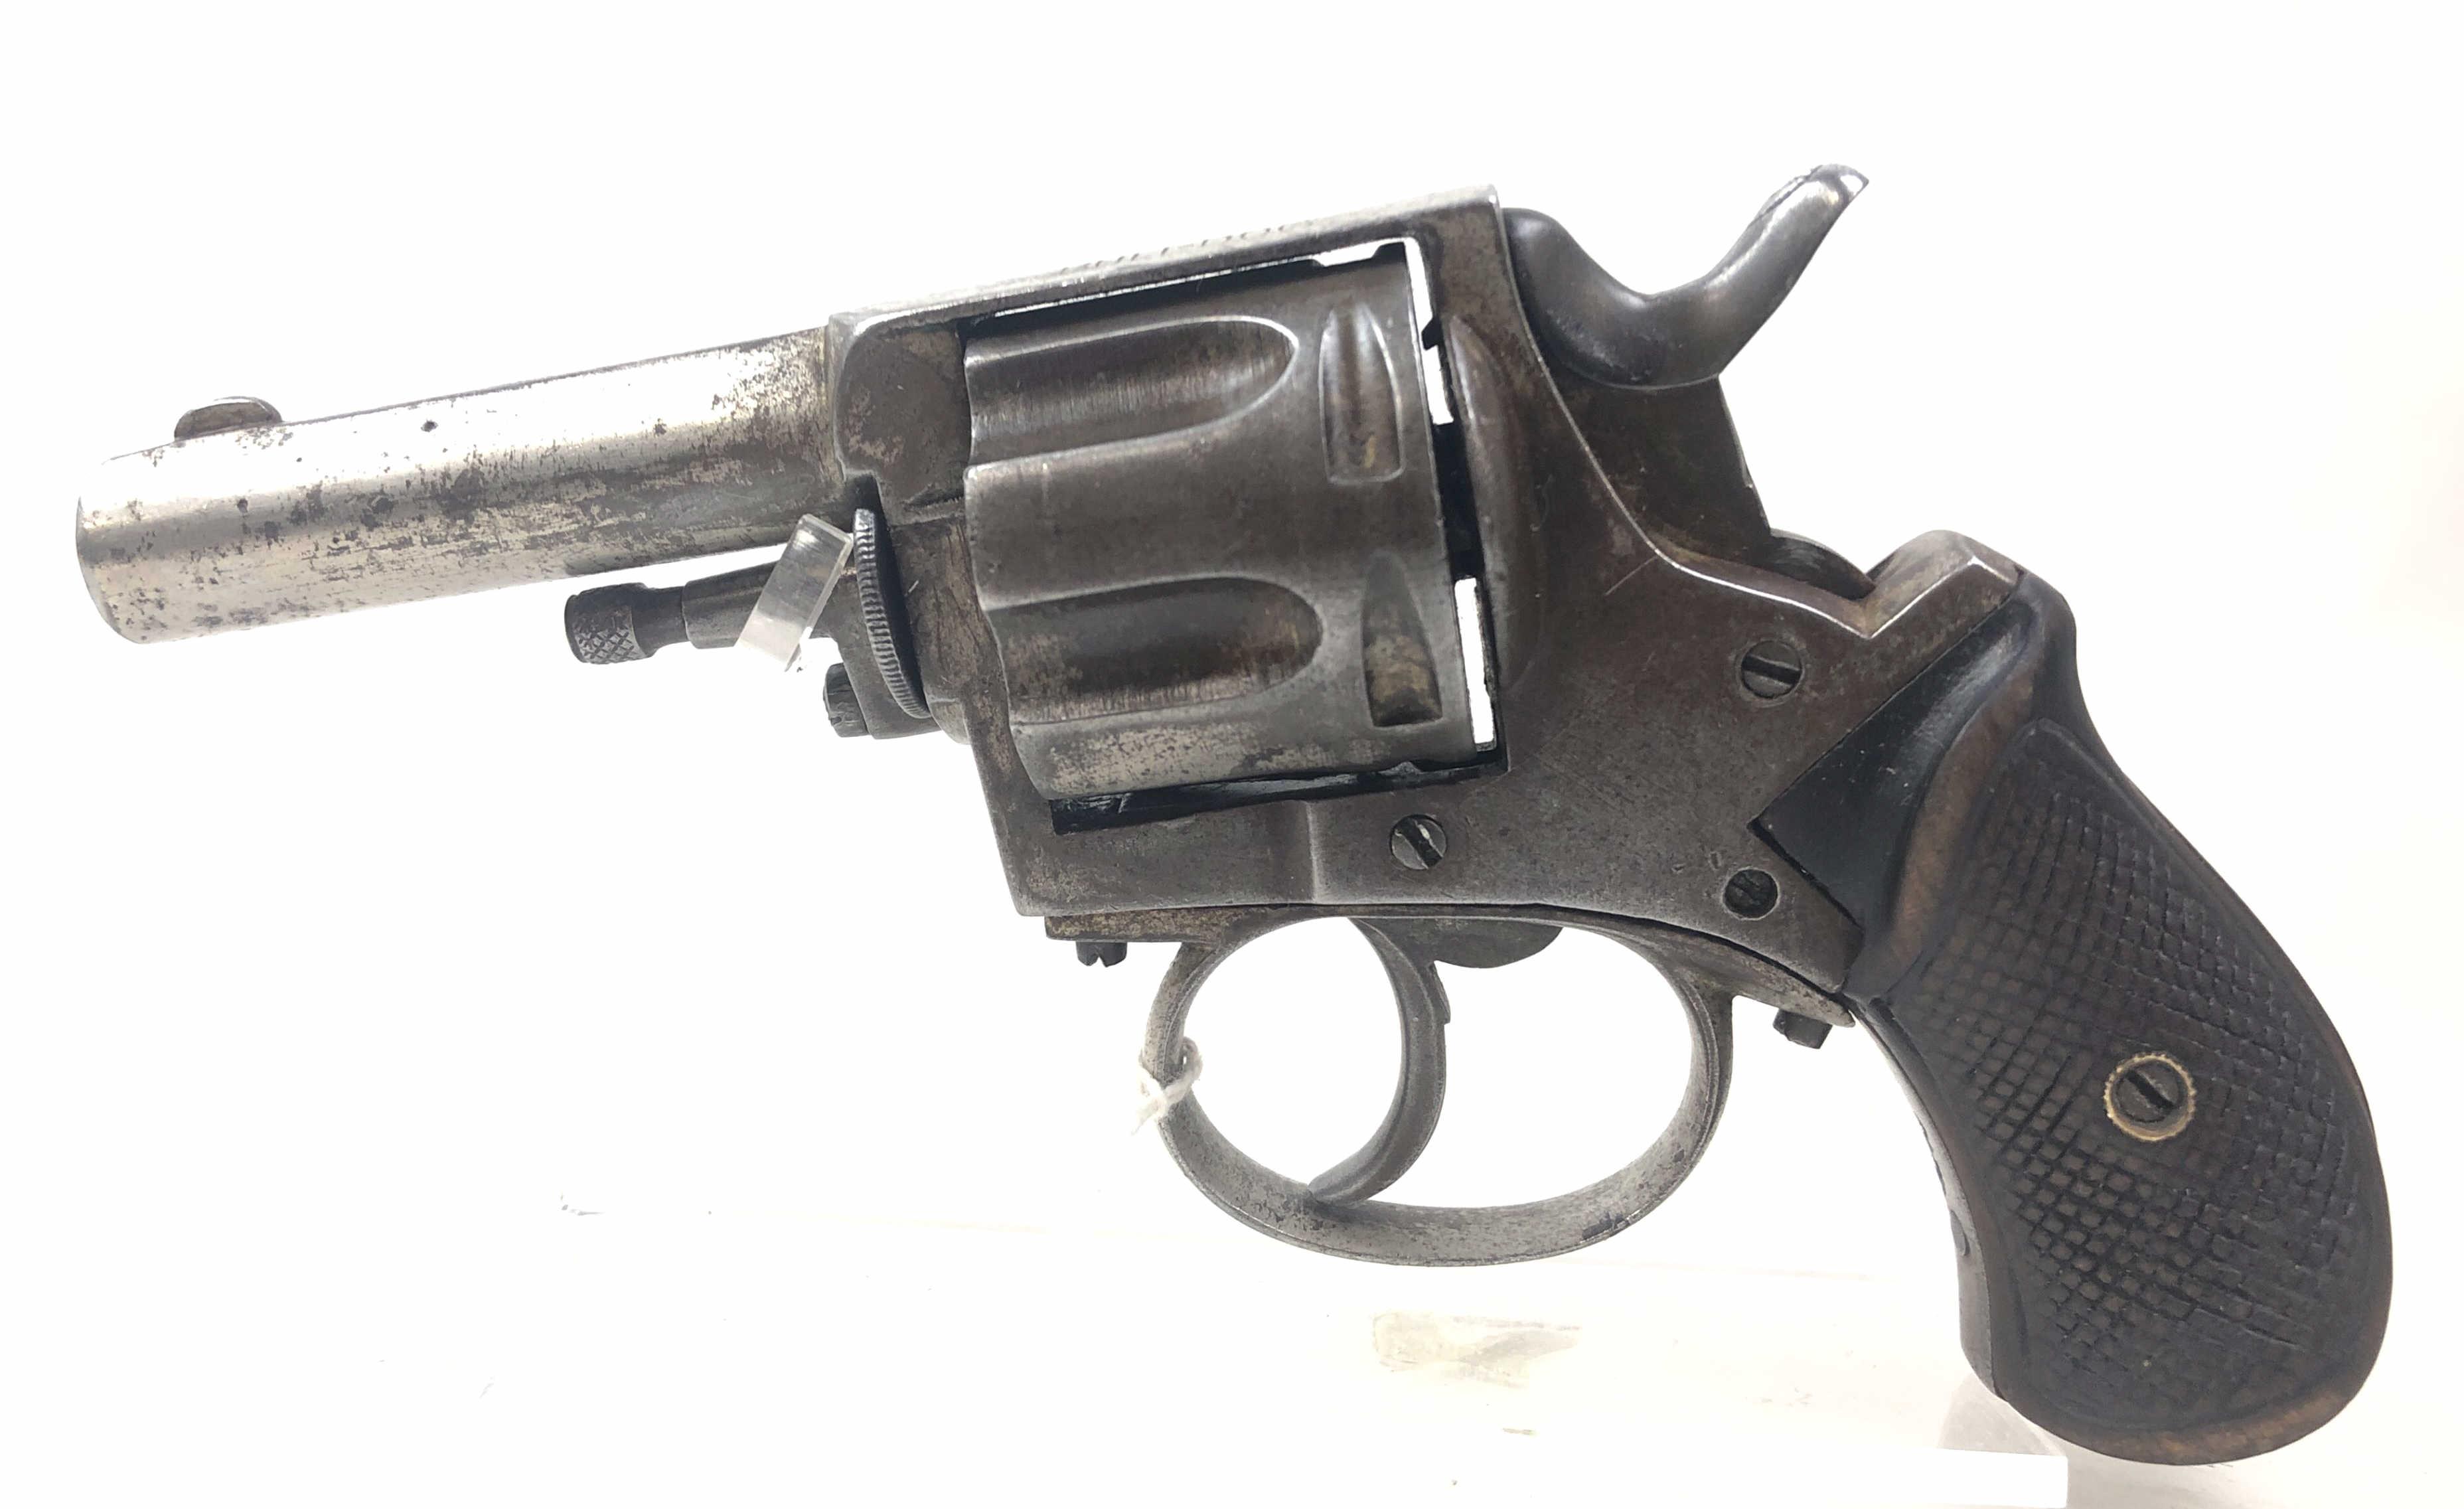 Webley British Bulldog Revolver